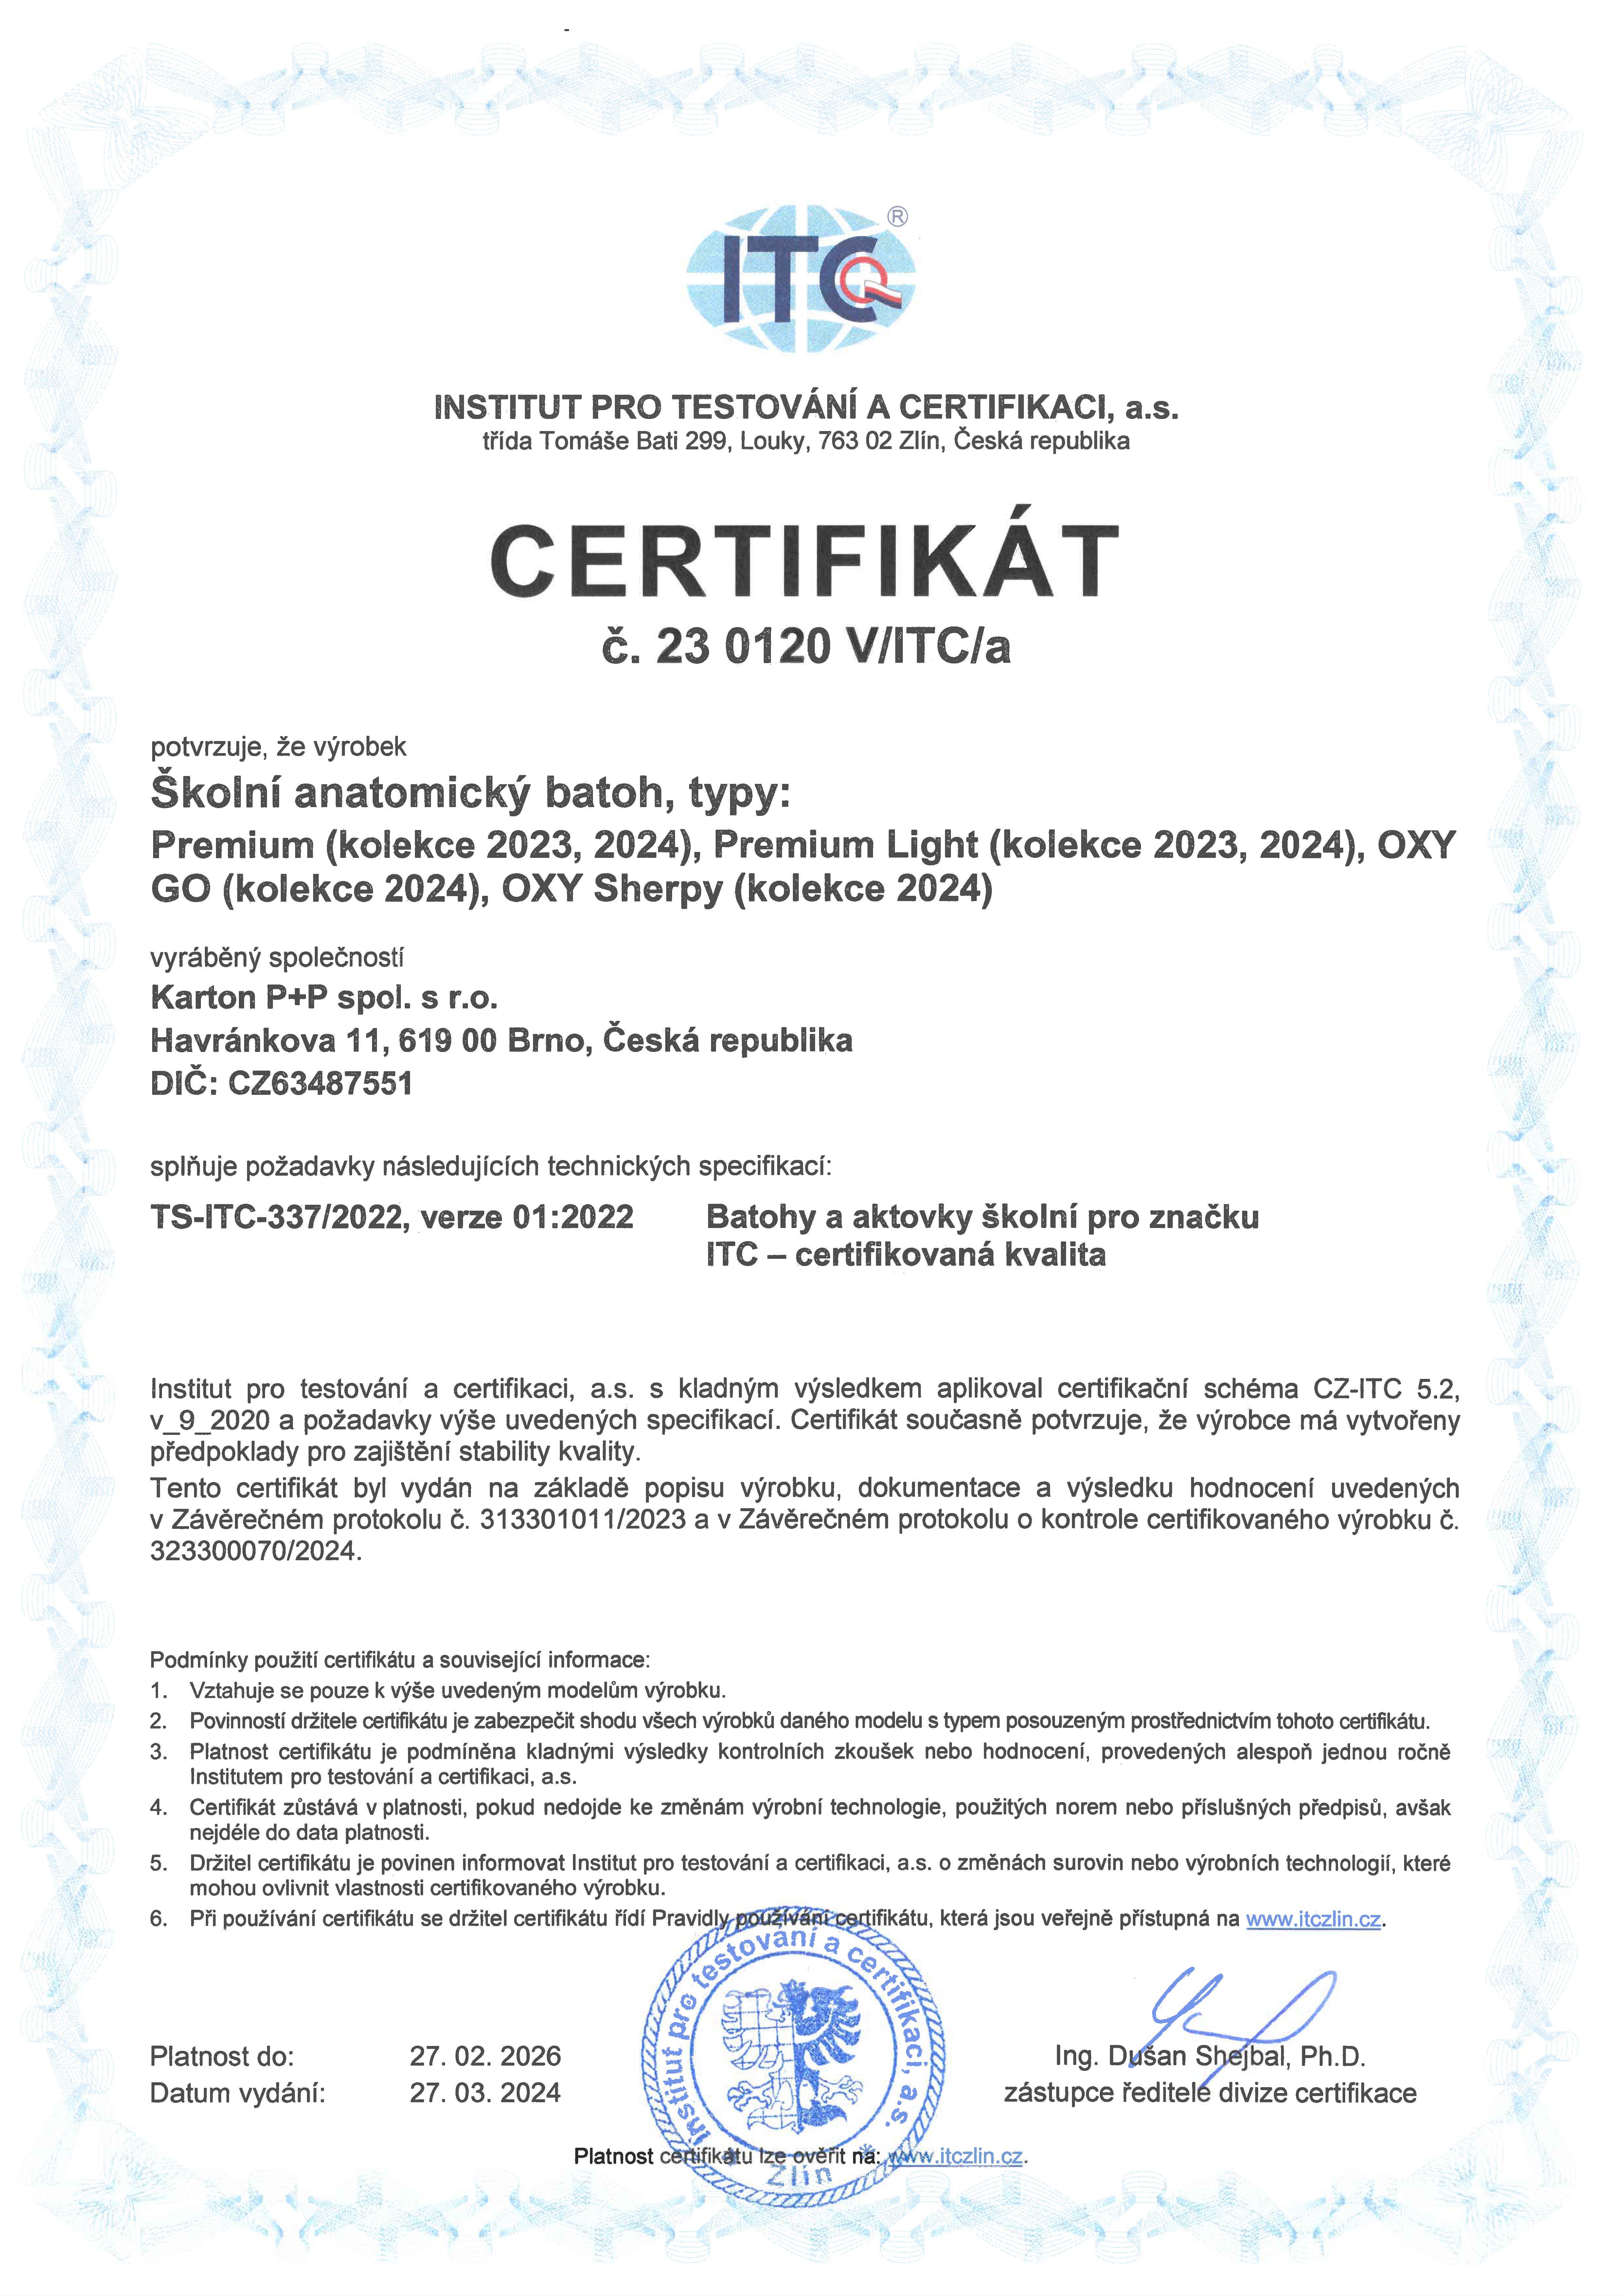 Certifikát_Premium,_Premium_Light,_OXY_GO,_OXY_Sherpy_česká_verze